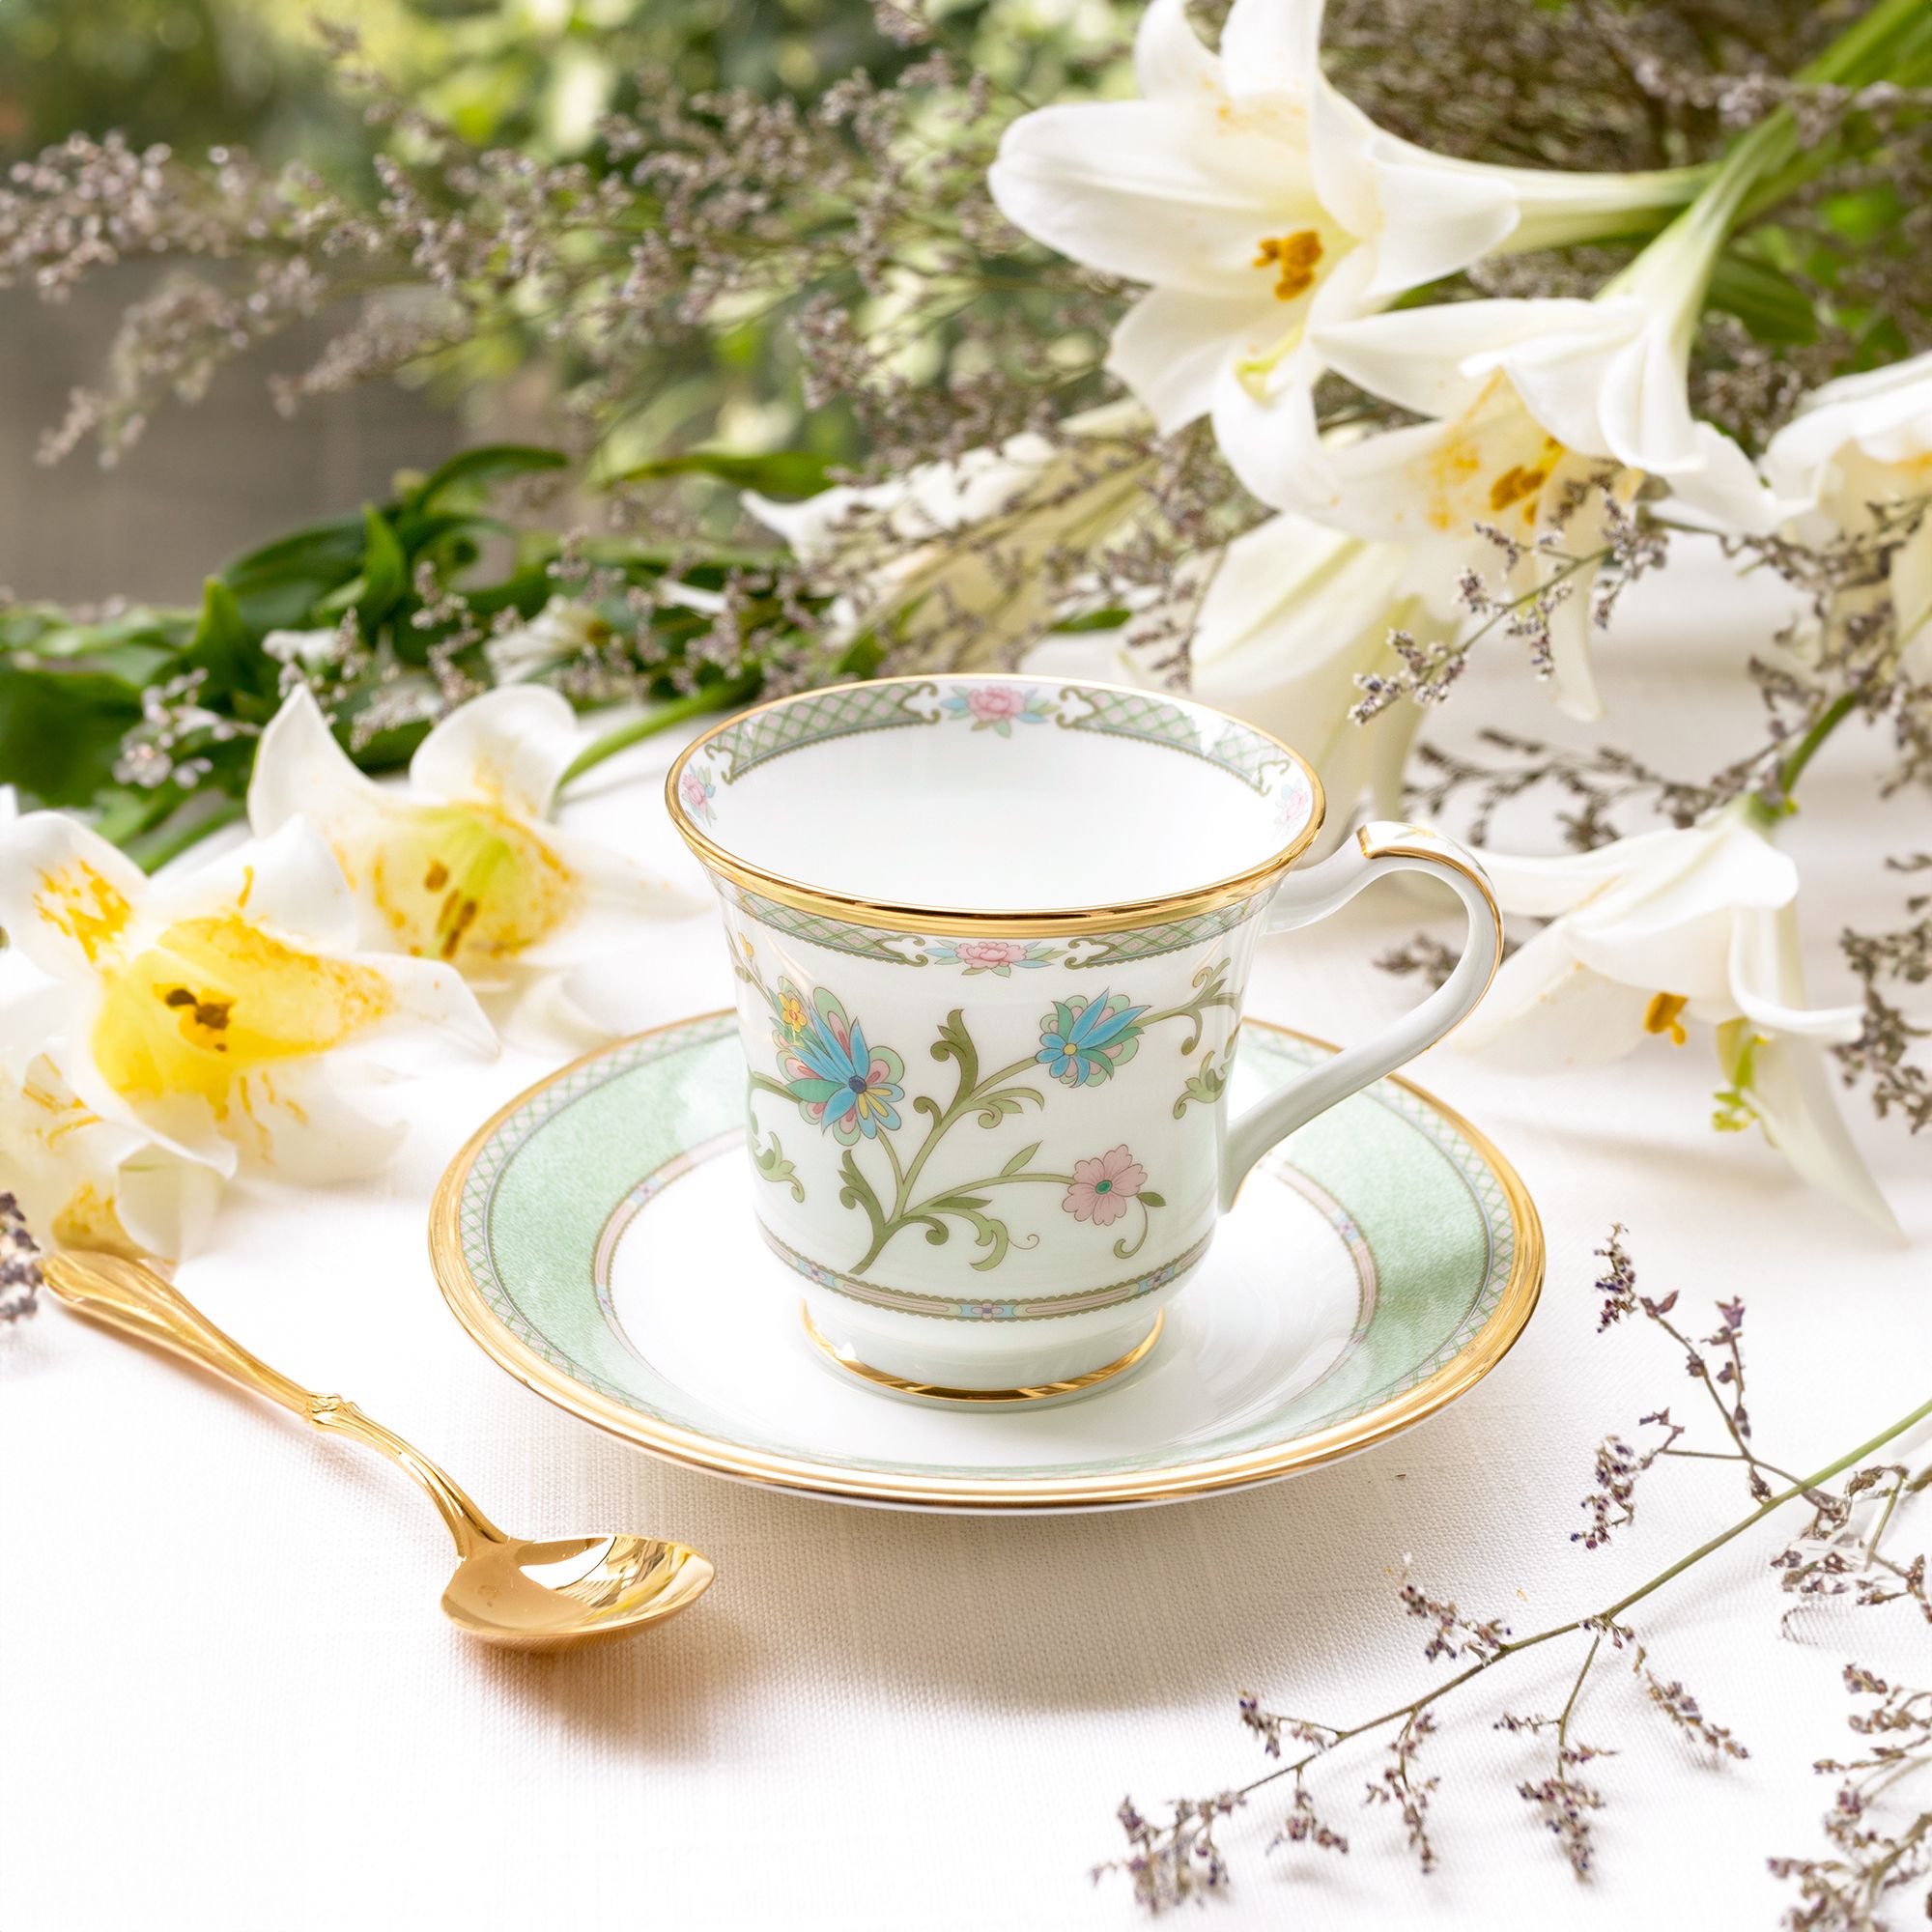  Bộ ấm chén uống trà 15 món sứ xương cao cấp viền vàng | Yoshino 9983J-T017L 